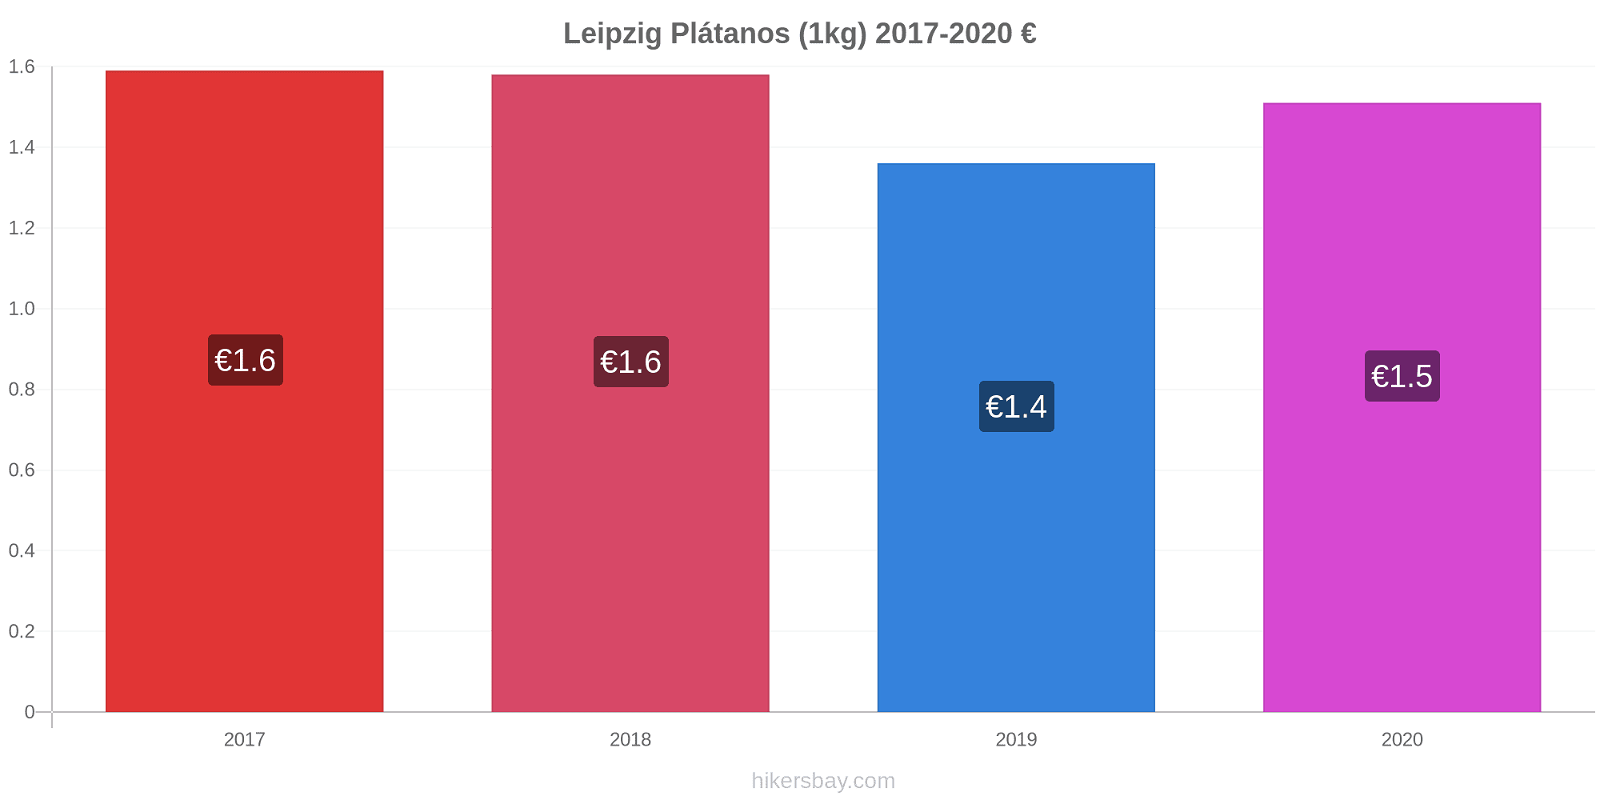 Leipzig cambios de precios Plátano (1kg) hikersbay.com